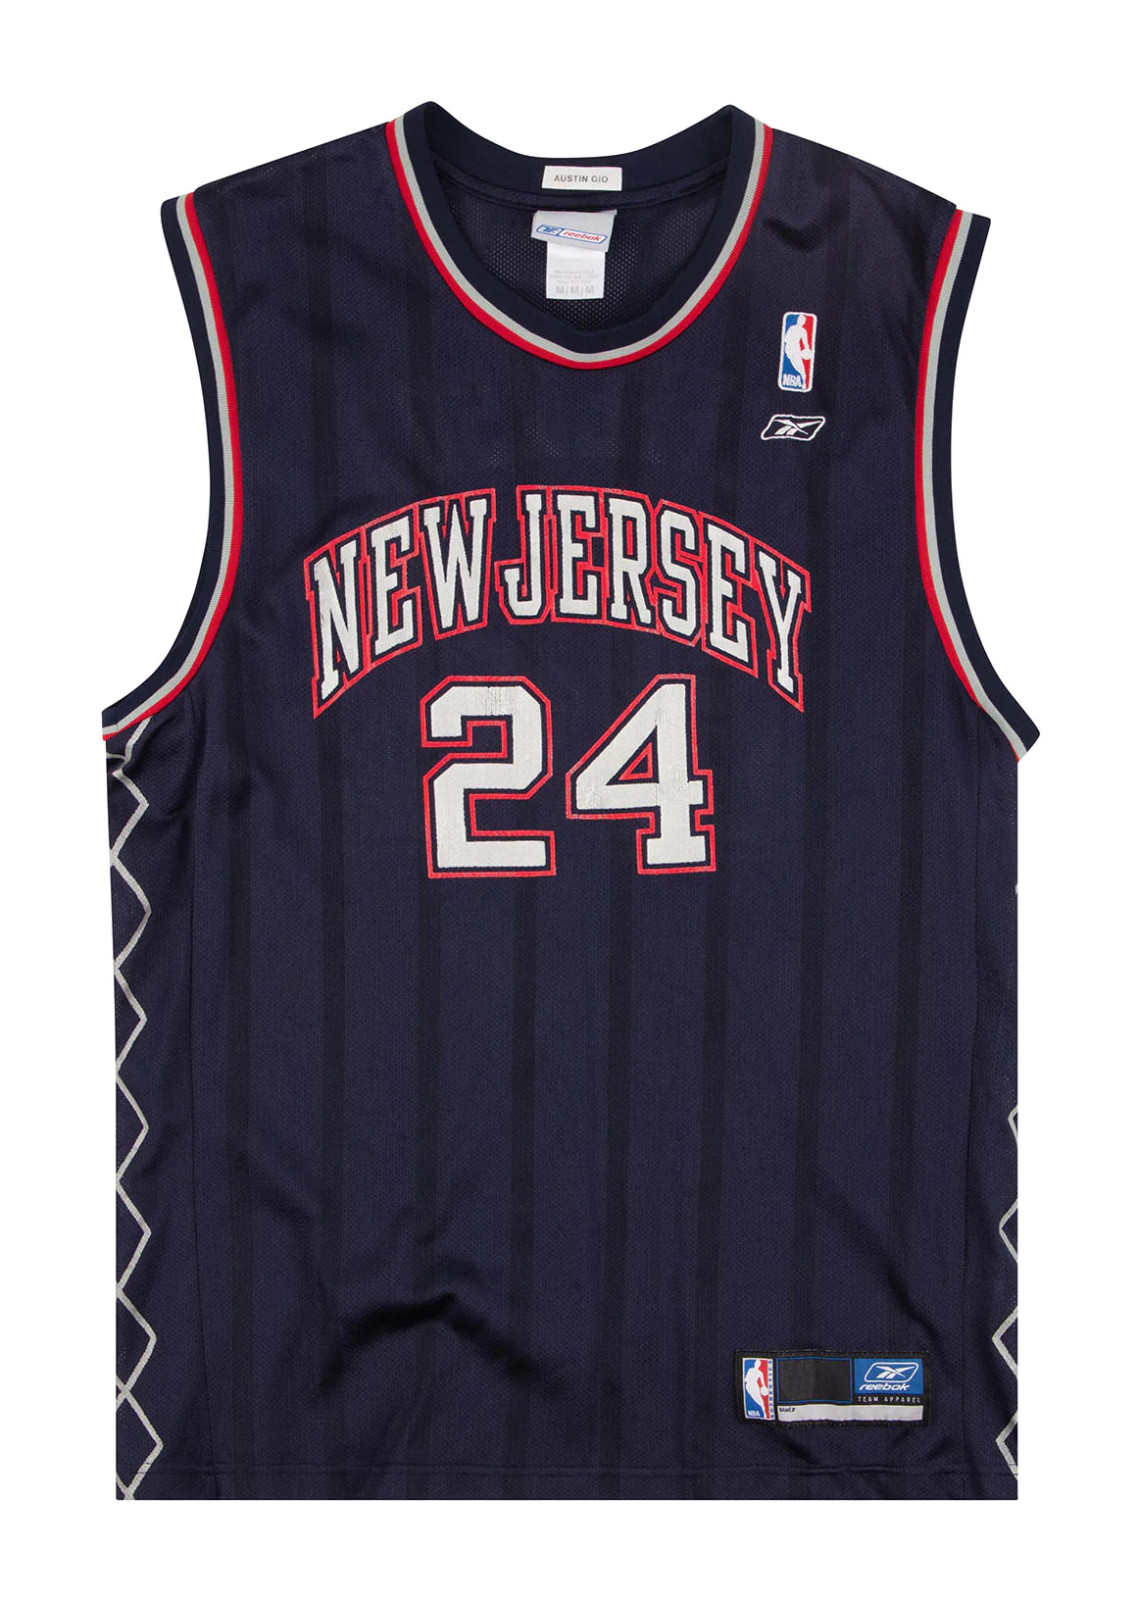 New Jersey Nets 2000-2002 Alternate Jersey